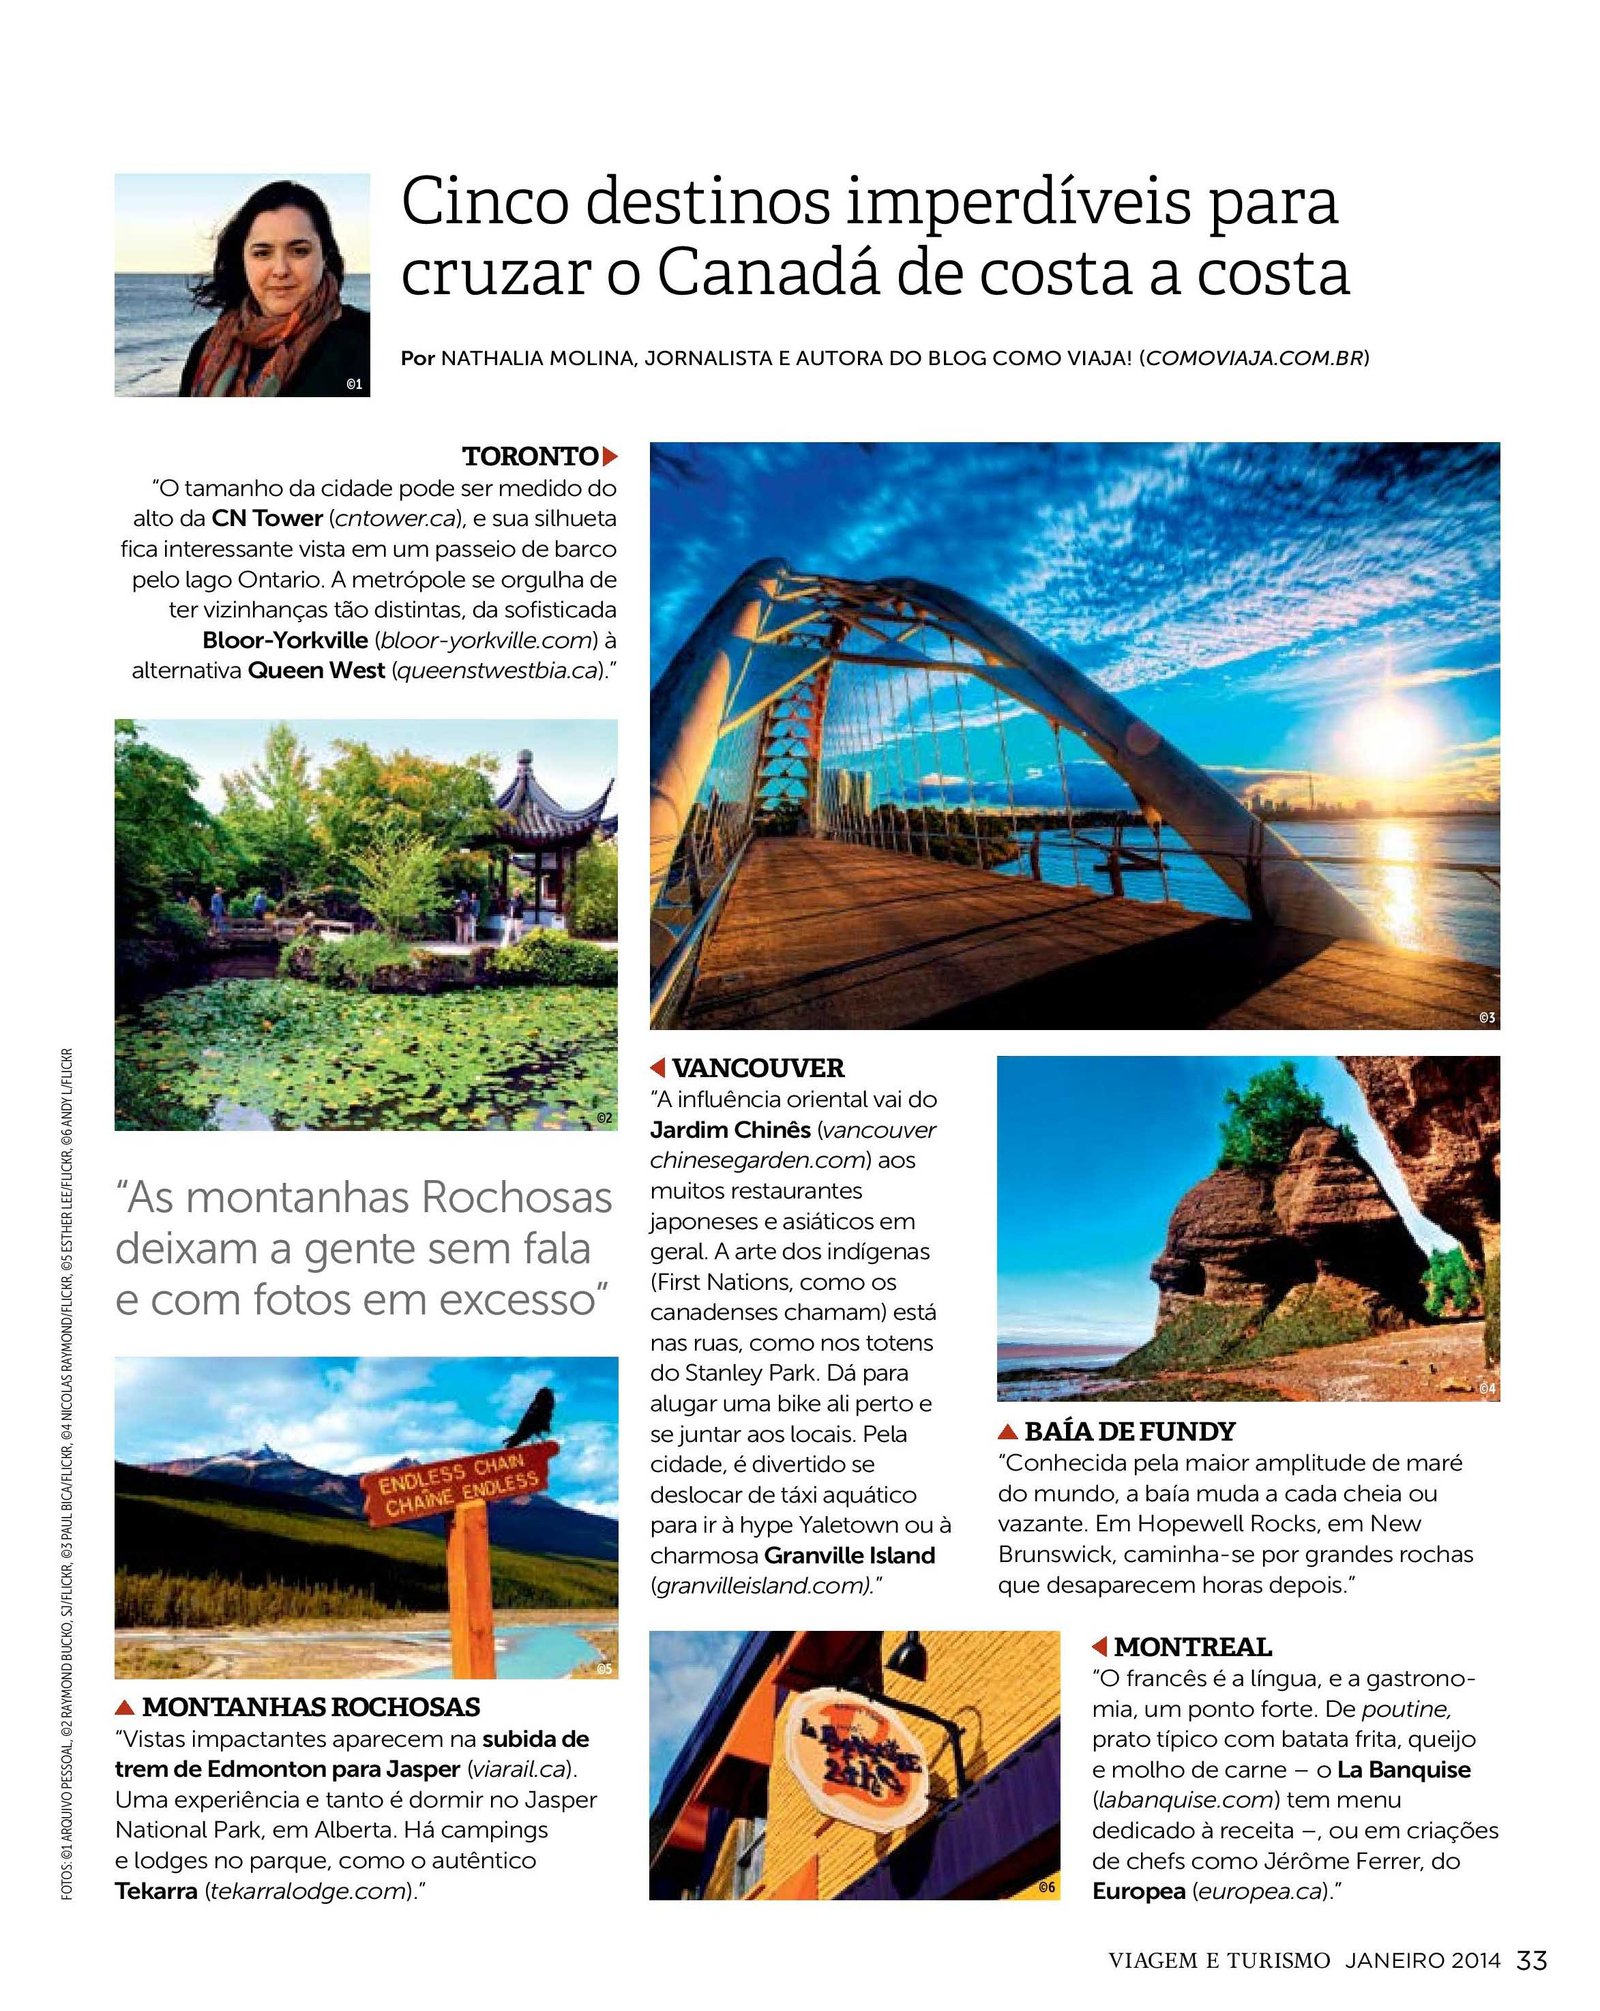 Dicas do Canadá, Nathalia Molina, @ComoViaja, Revista Viagem e Turismo